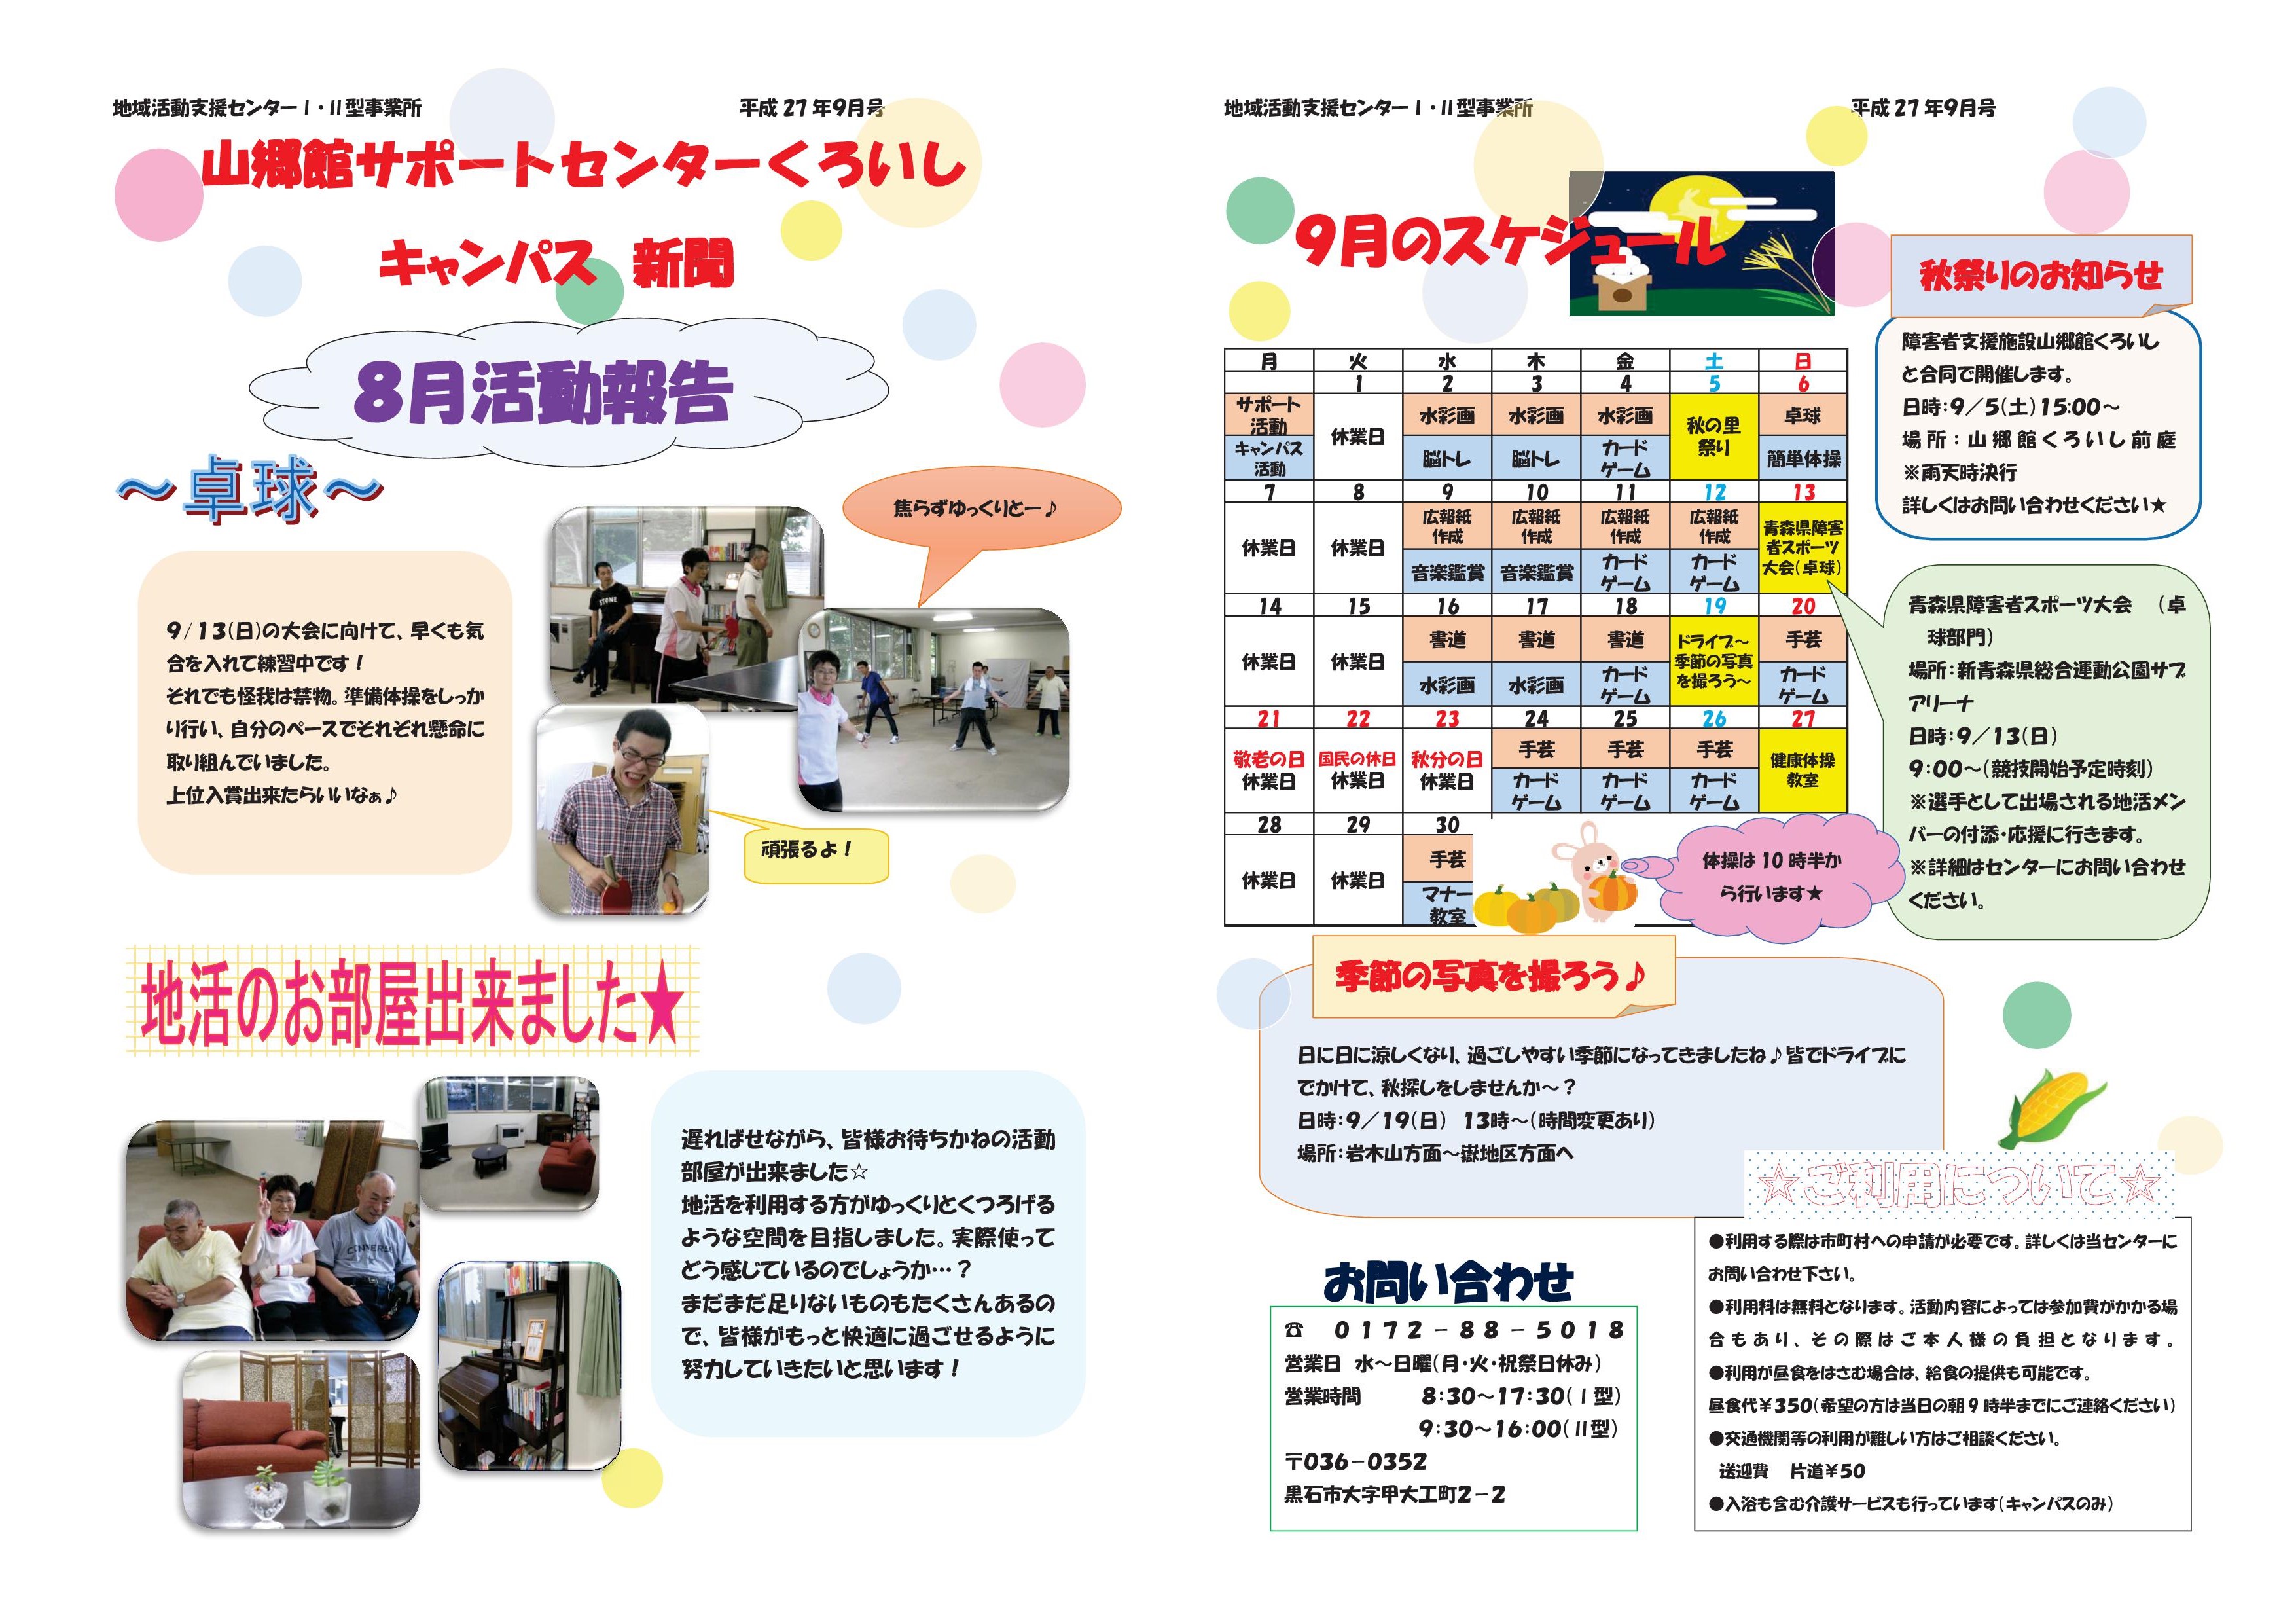 「山郷館サポートセンターくろいしキャンパス新聞」平成27年9月号を発行しました